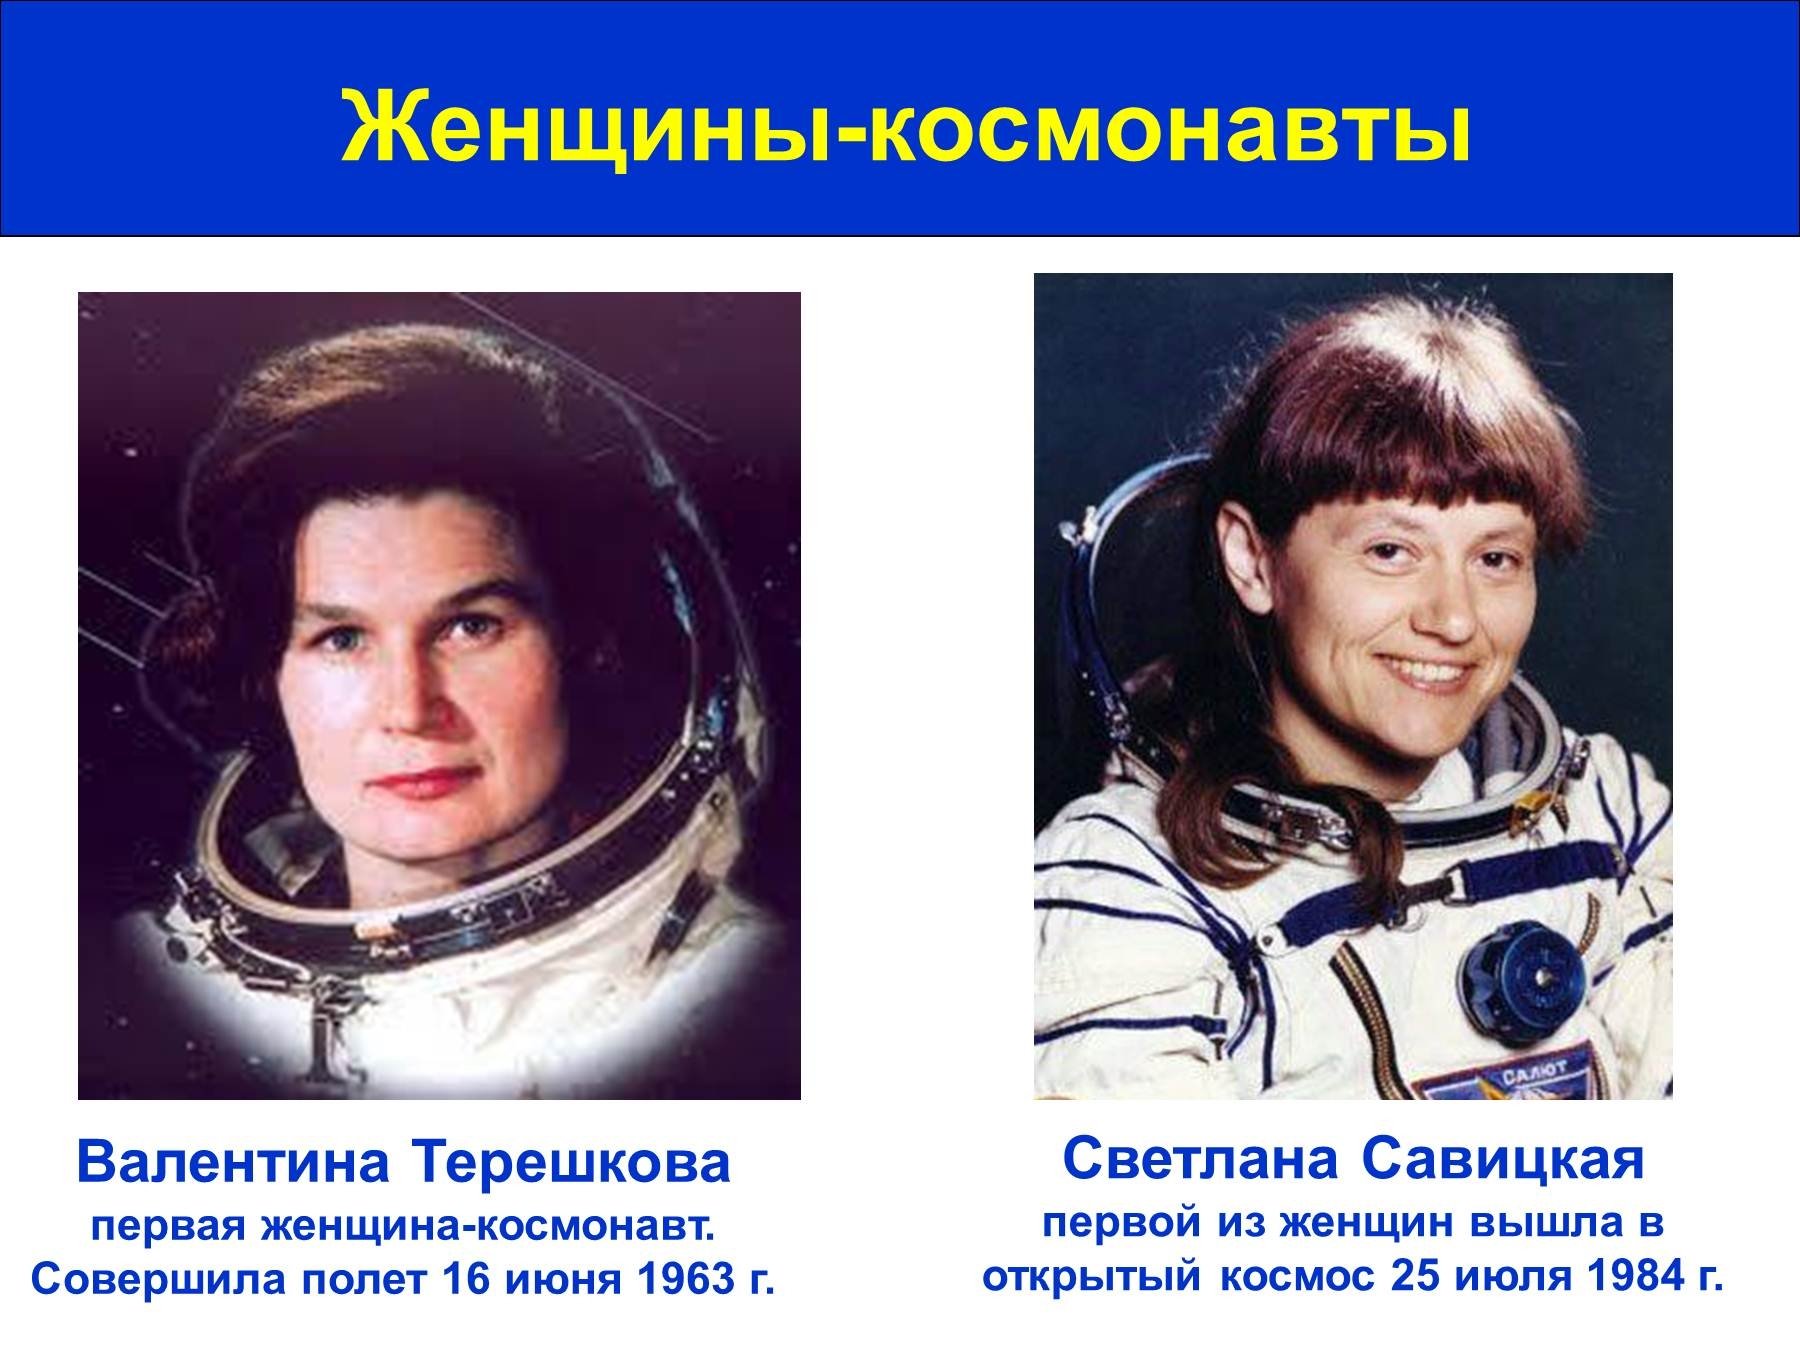 Первые в космосе 5 класс. Восток 6 Терешкова. Восток-6 космический корабль Терешковой.